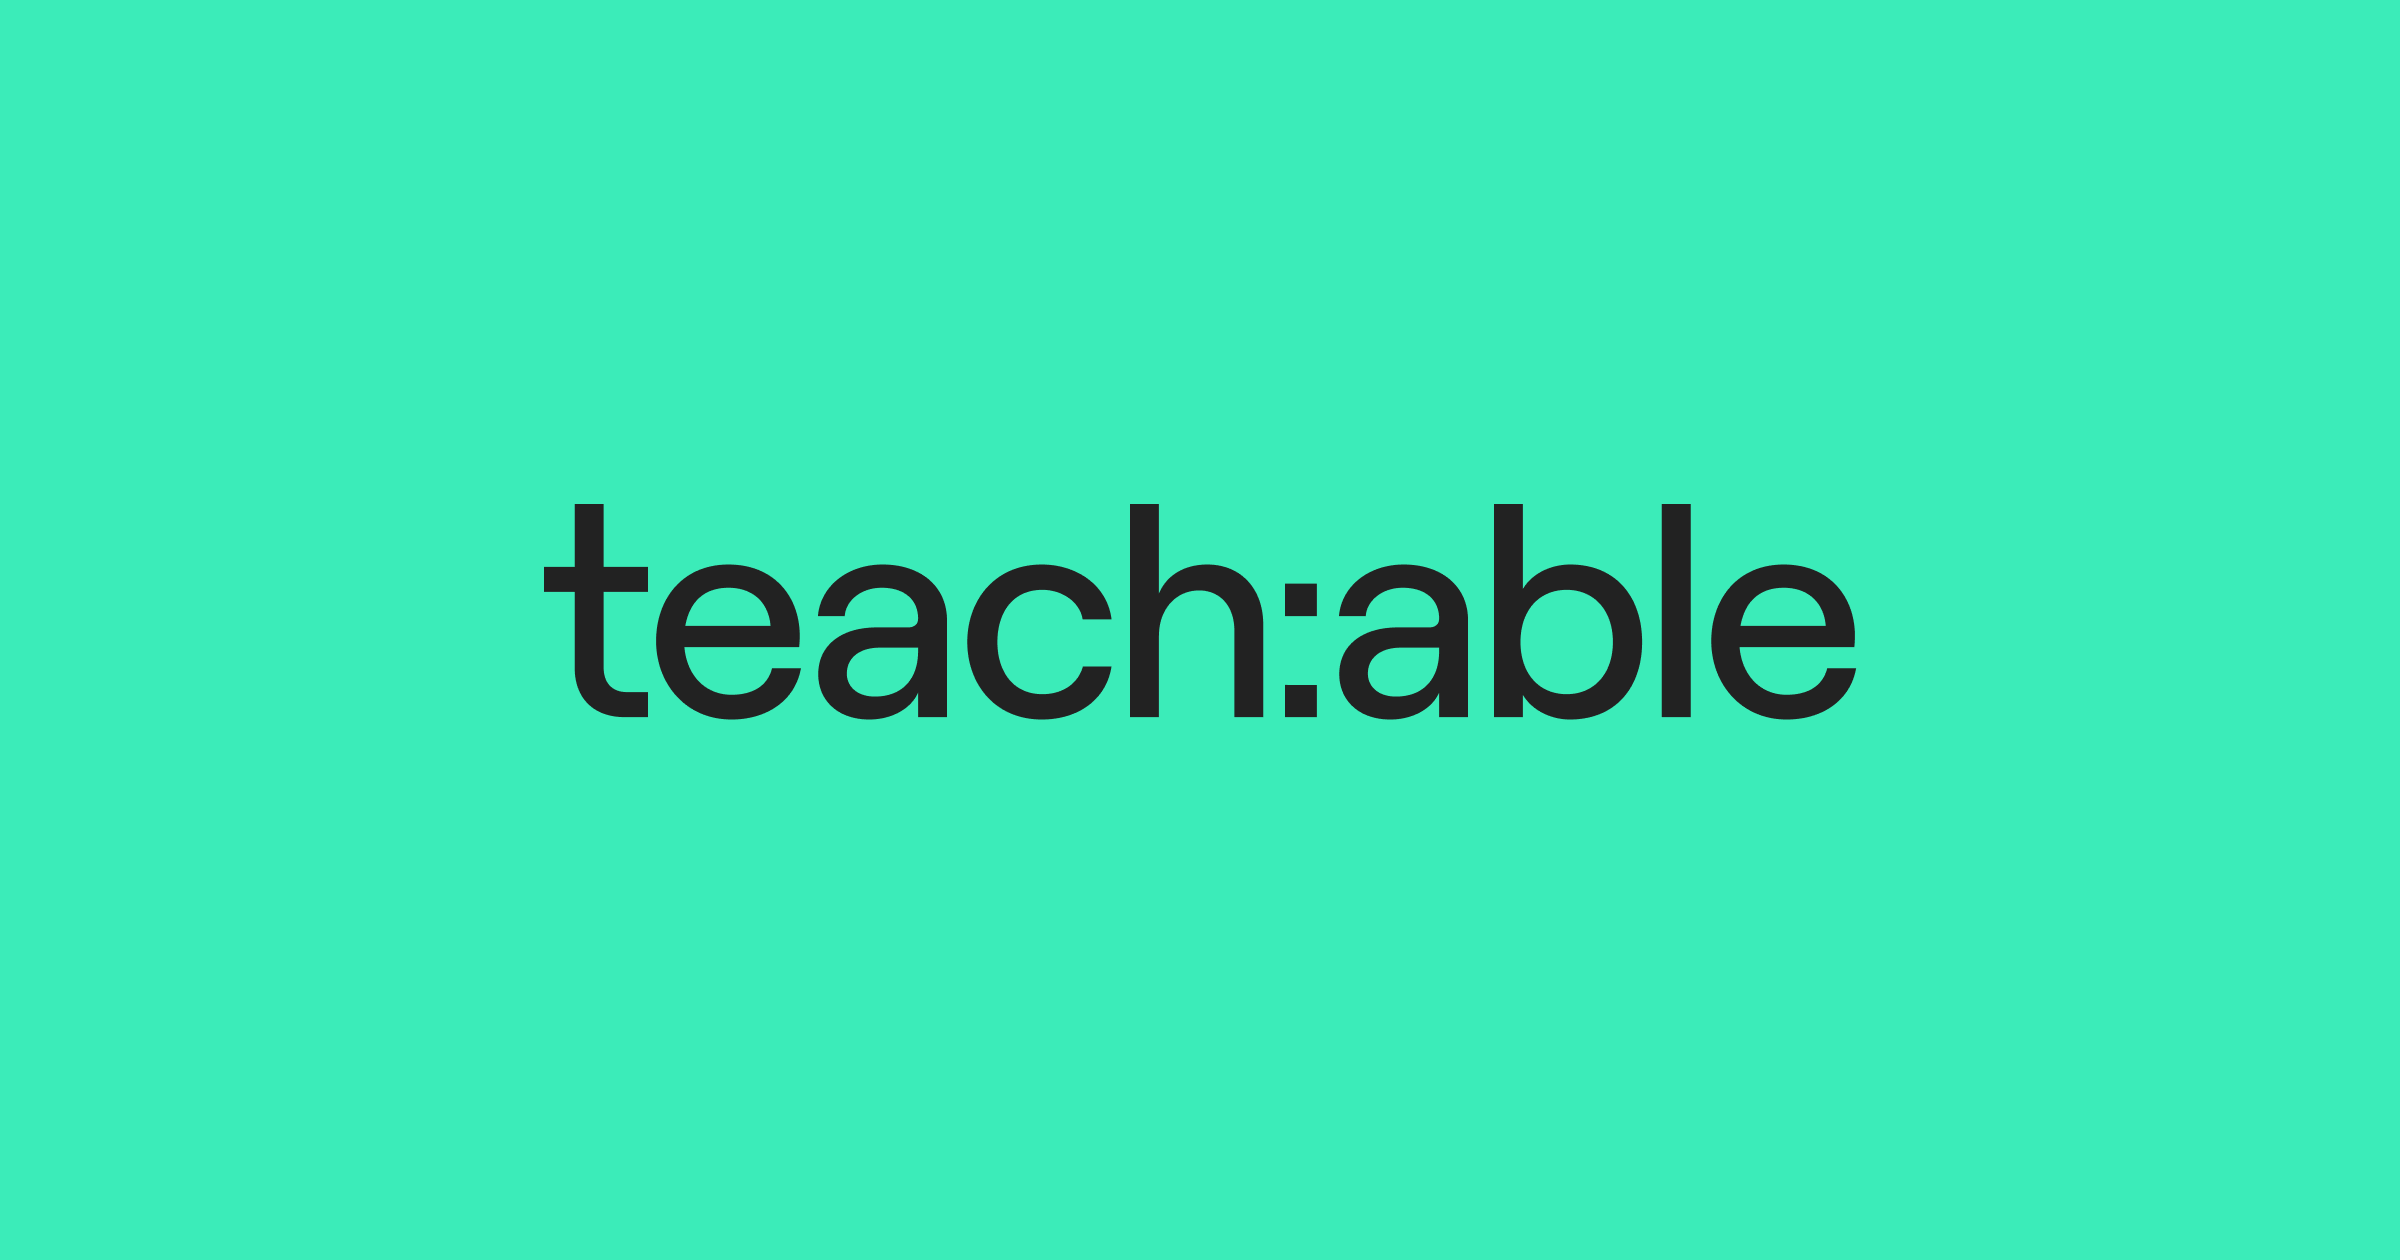 teachable